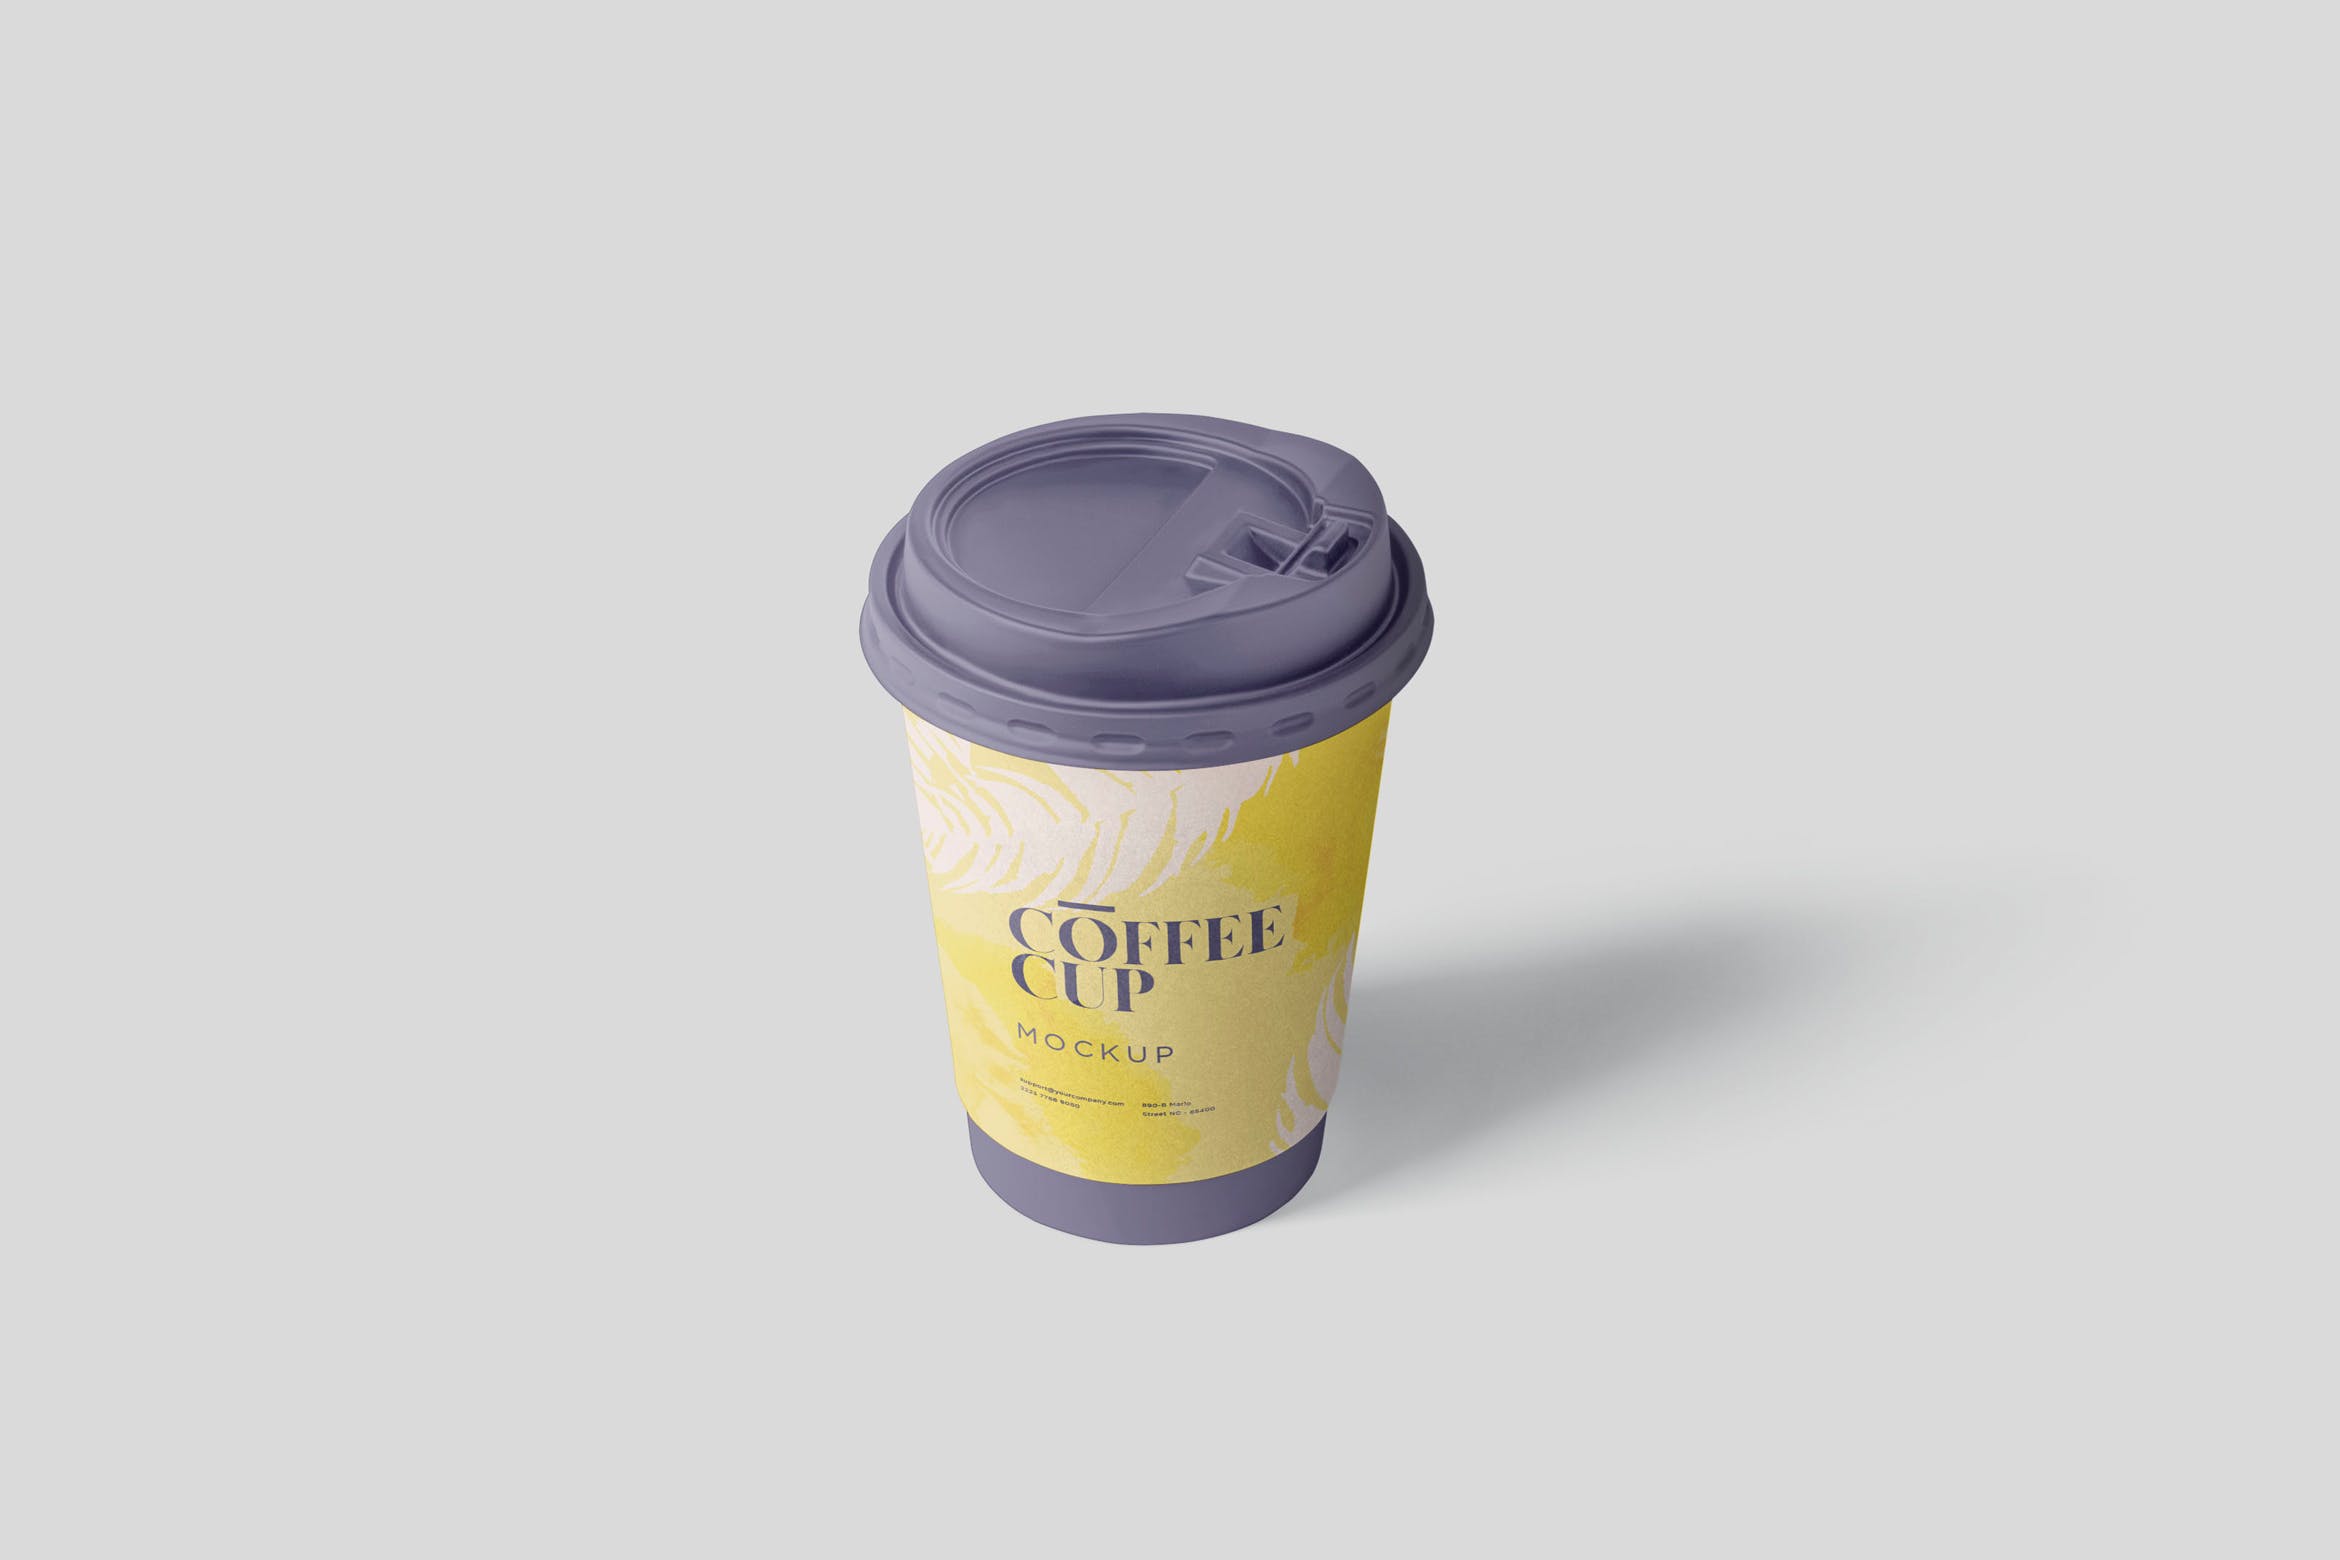 咖啡一次性纸杯设计效果图16图库精选 Coffee Cup Mockup插图